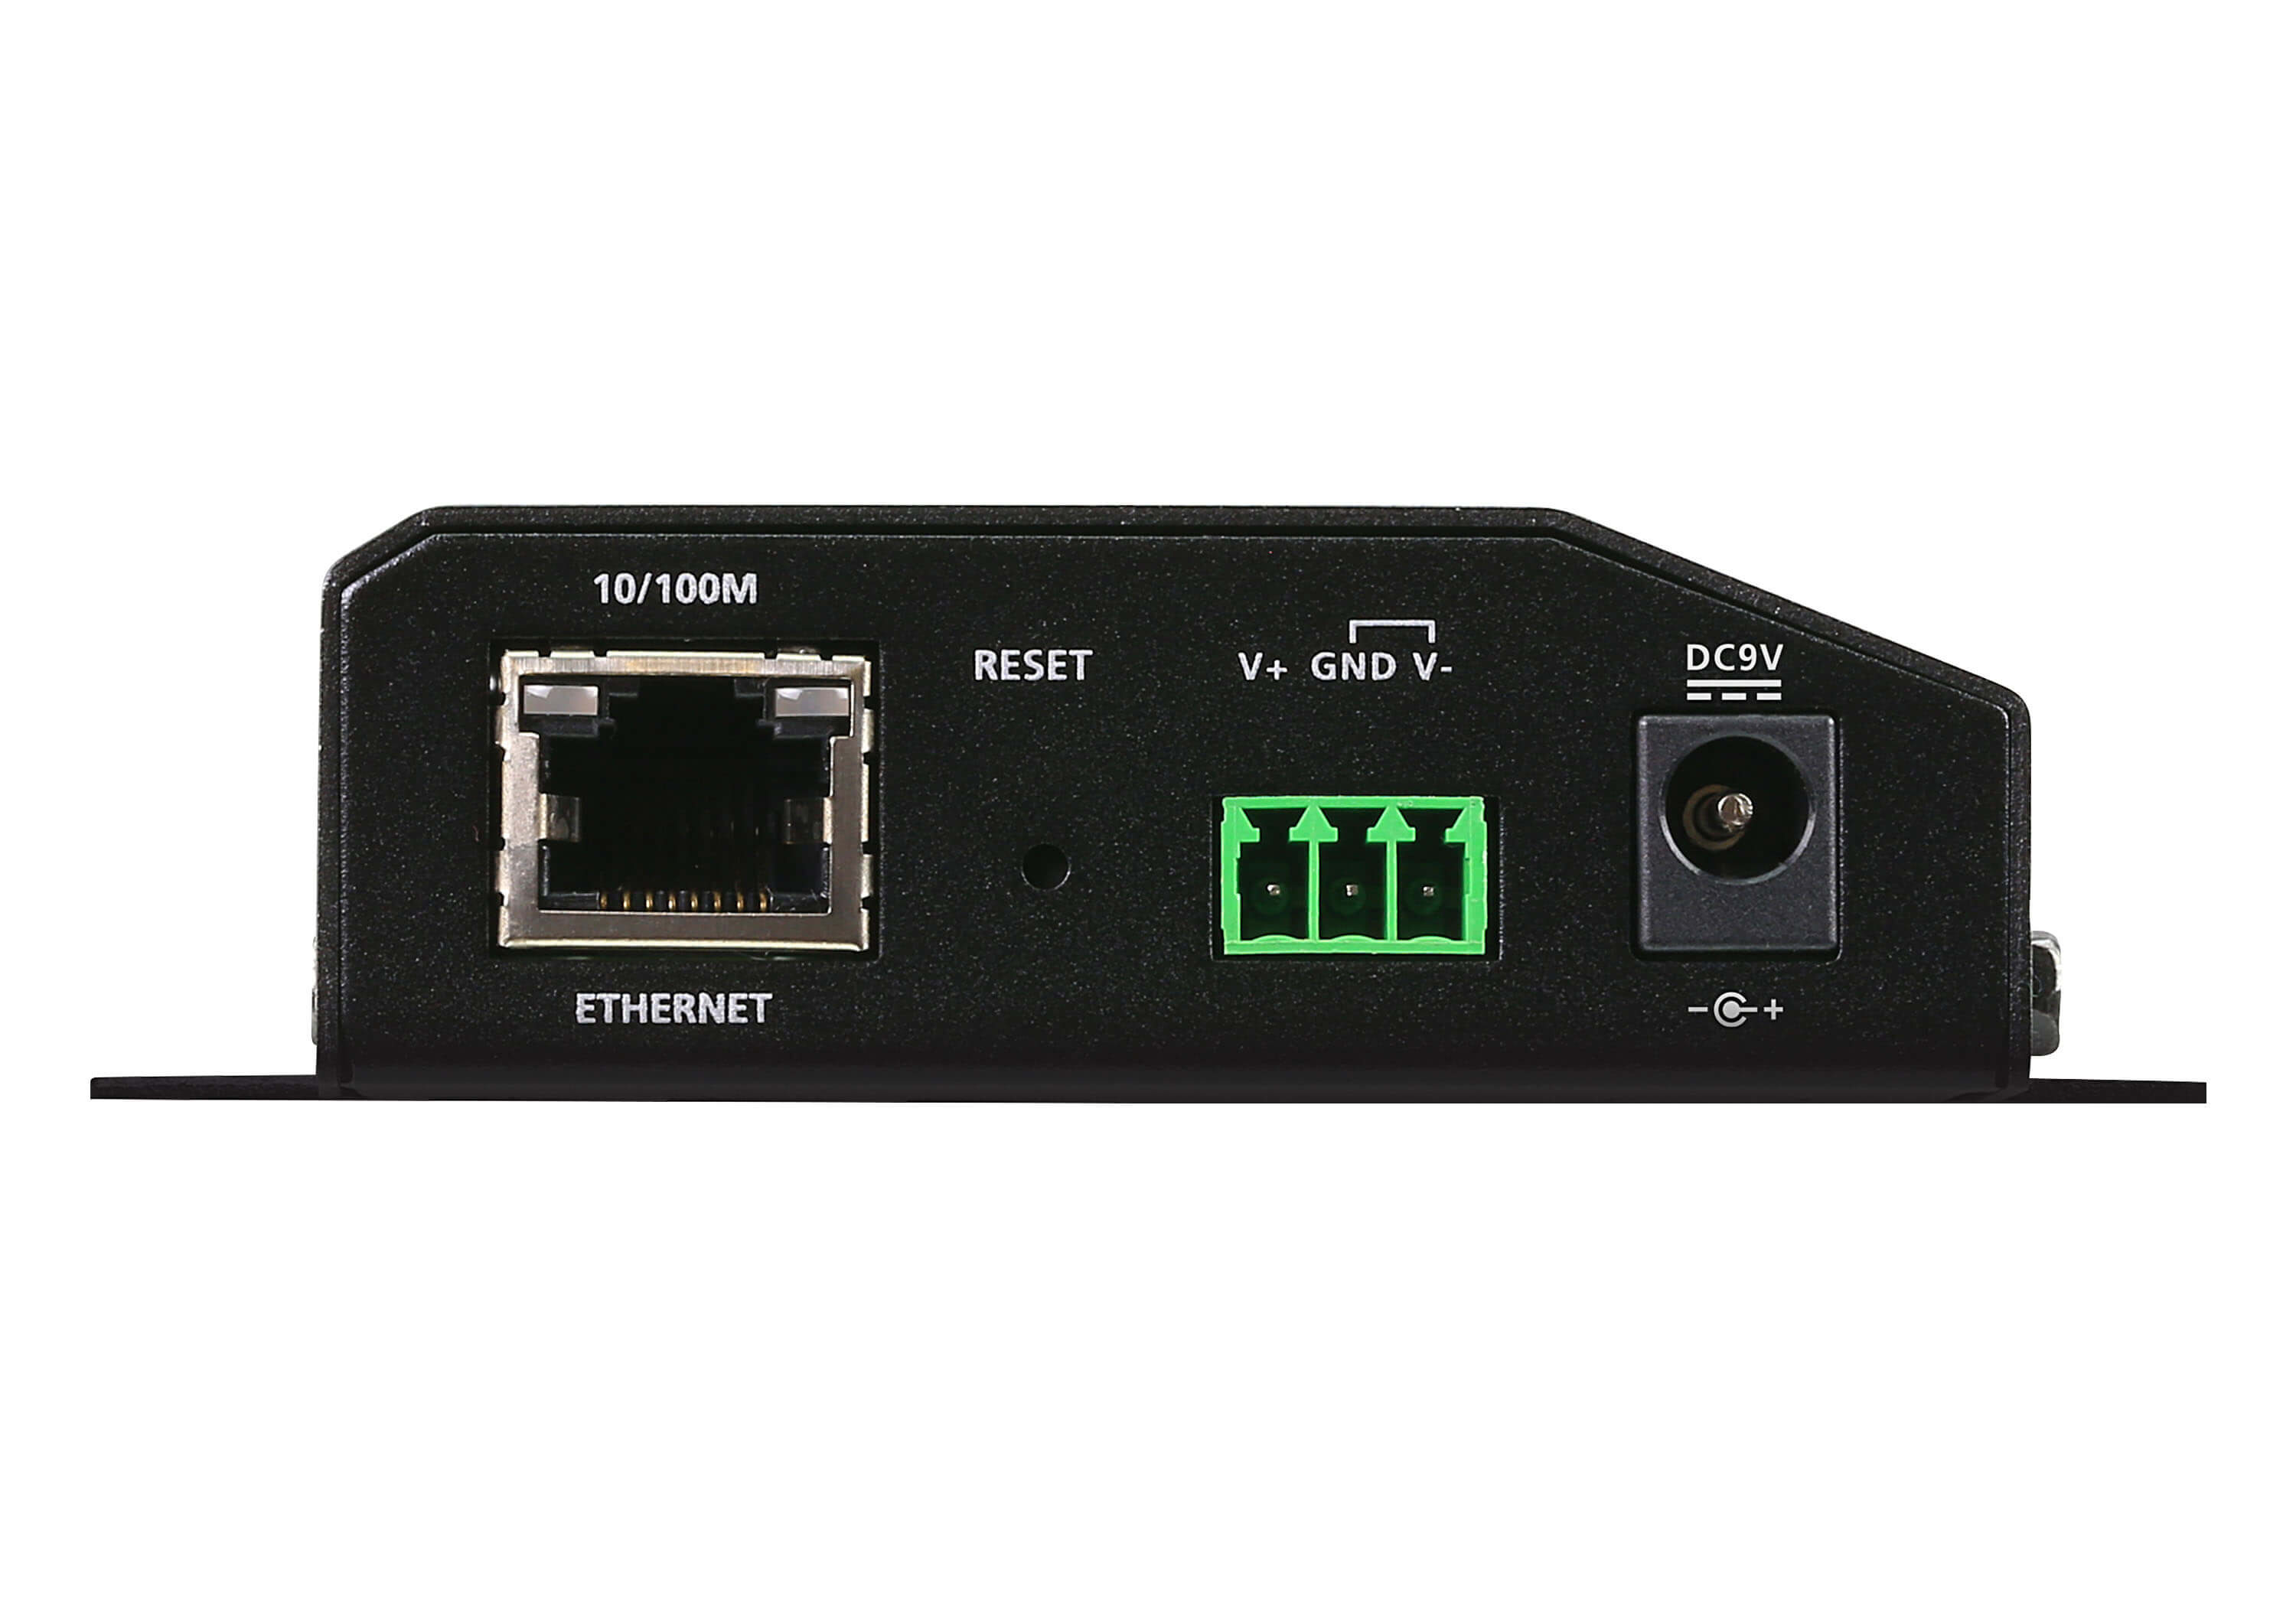 取寄 ATEN SN3402P 2ポートRS-232C/422/485セキュアデバイスサーバー（PoE対応）